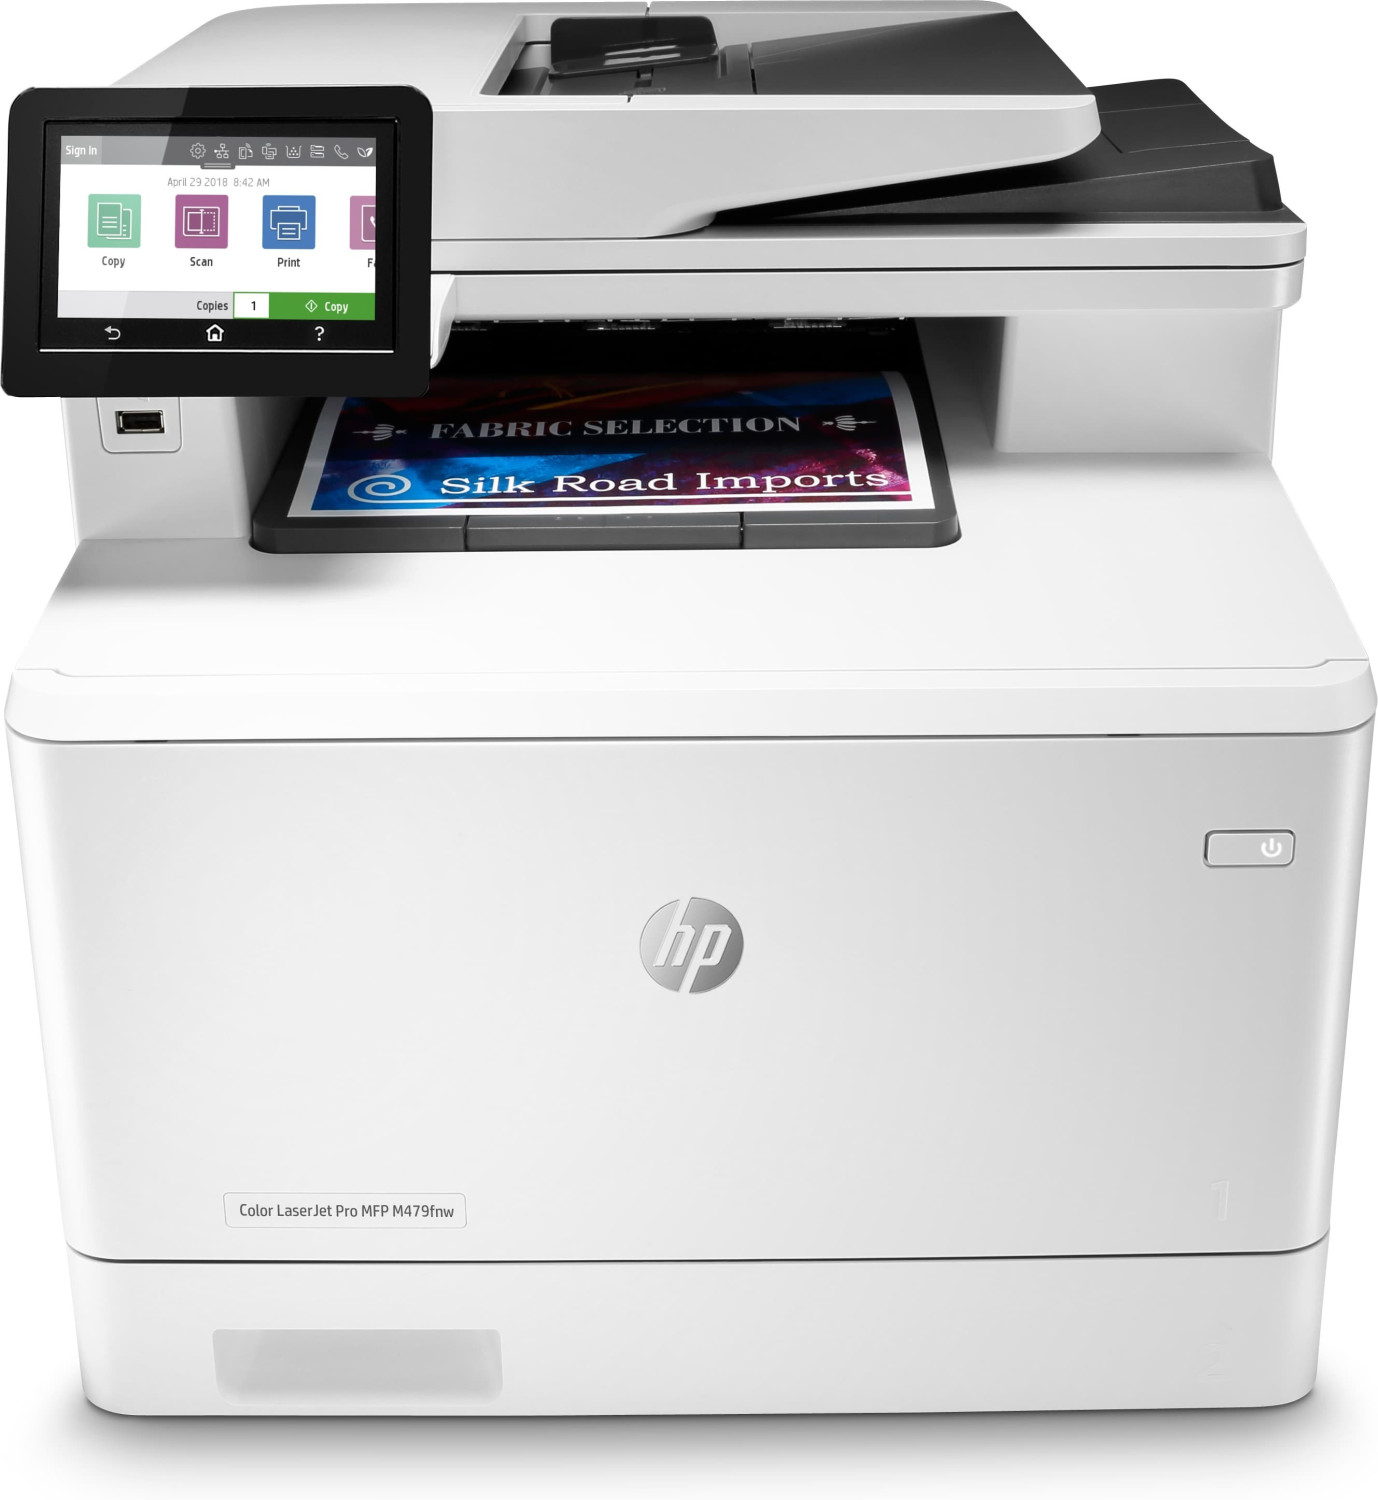 Image of HP Color LaserJet Pro Stampante multifunzione M479fnw, Stampa, copia, scansione, fax, e-mail, Scansione verso e-mail/PDF; ADF da 50 fogli piani